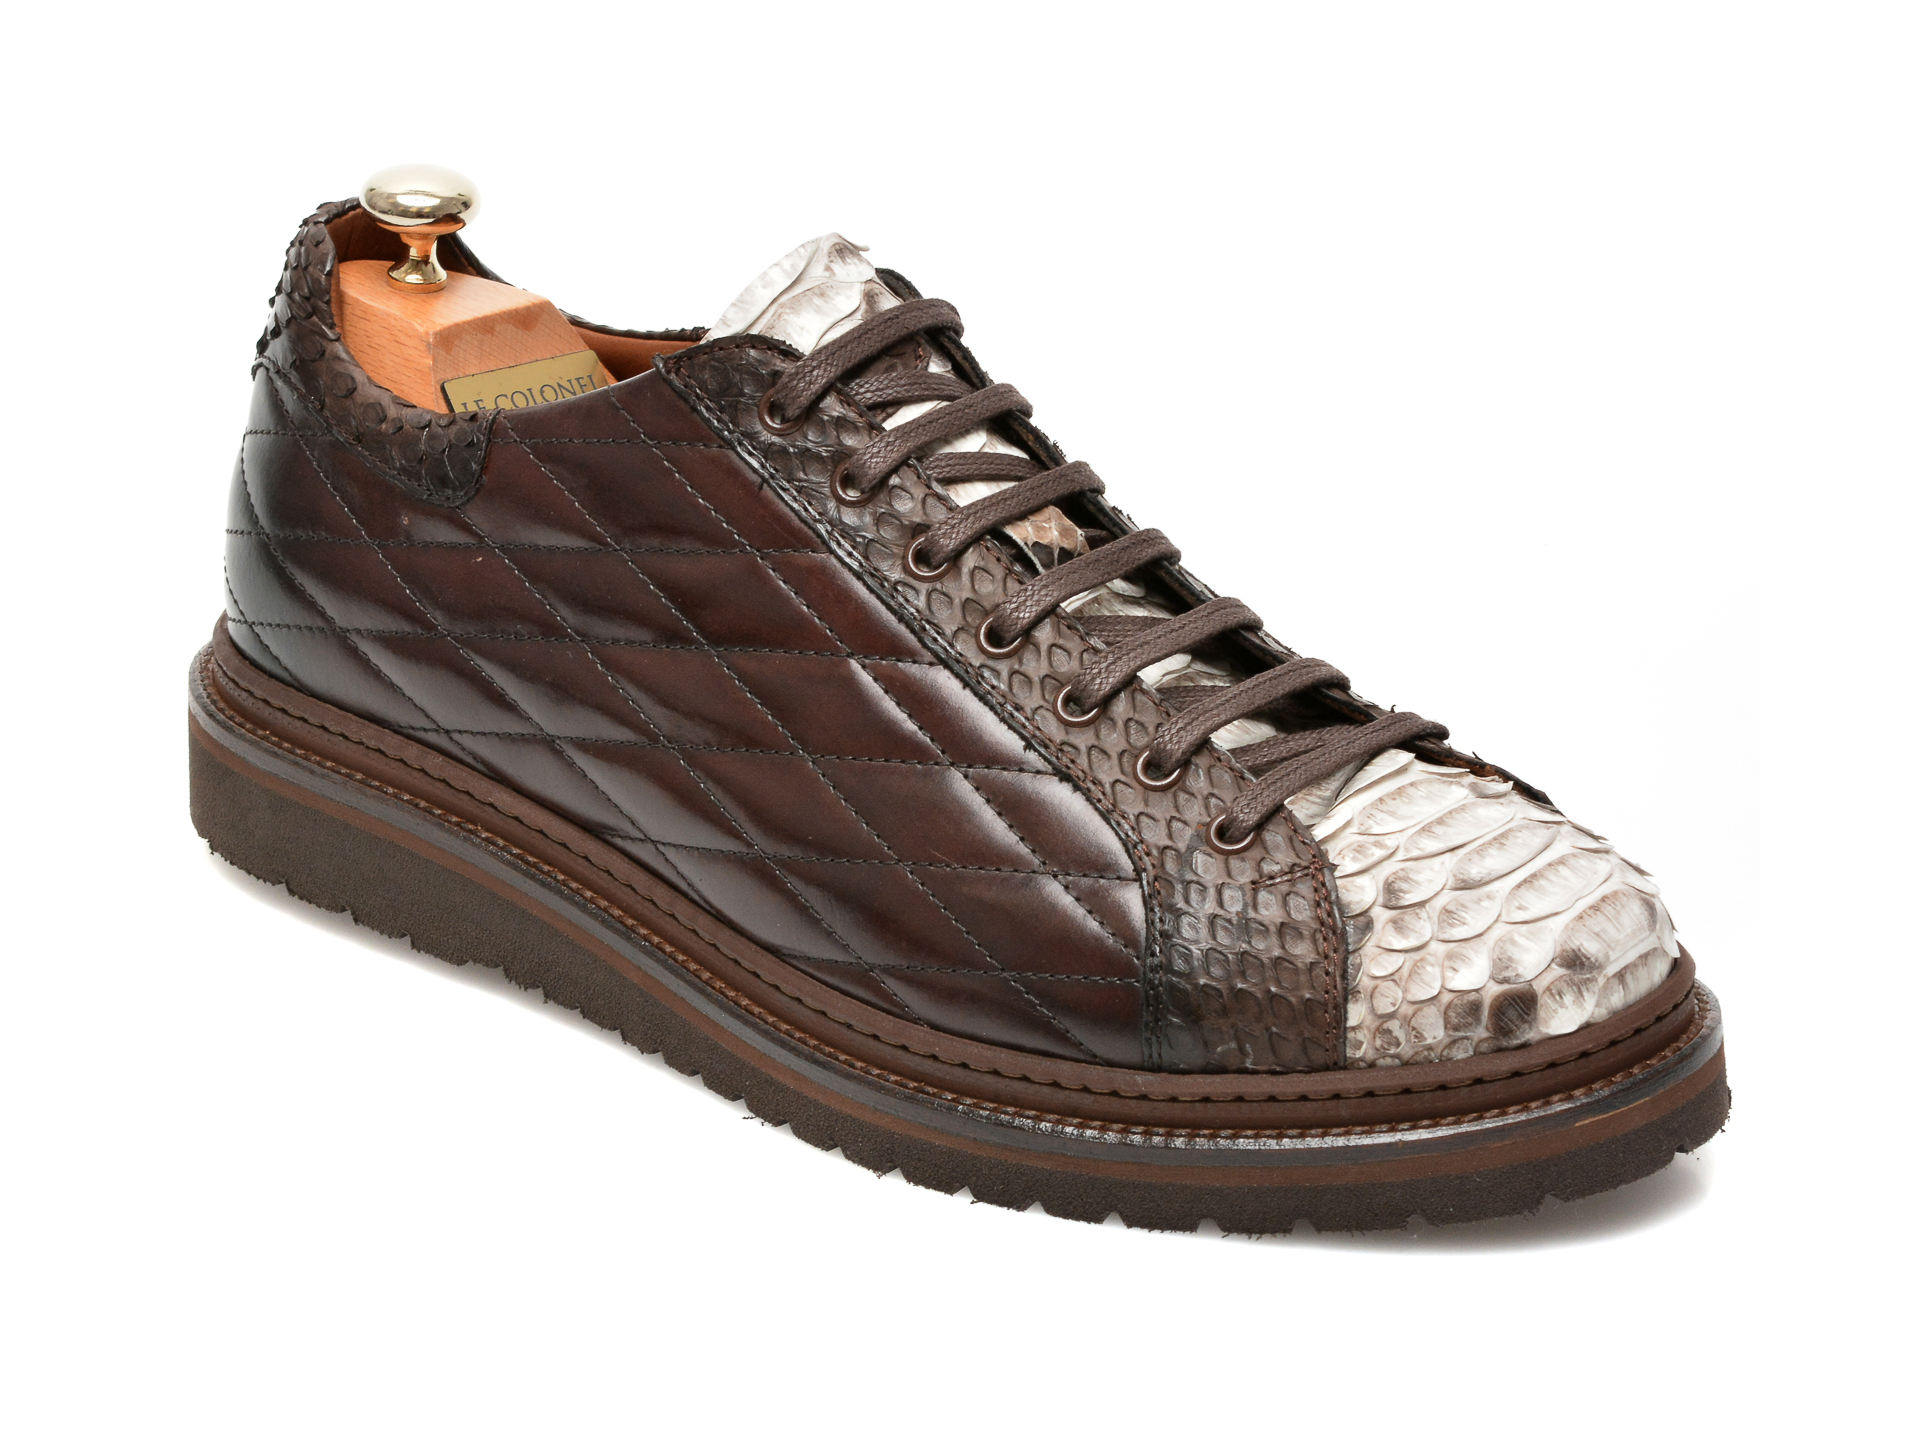 Pantofi LE COLONEL maro, 64802, din piele naturala Le Colonel imagine 2022 13clothing.ro